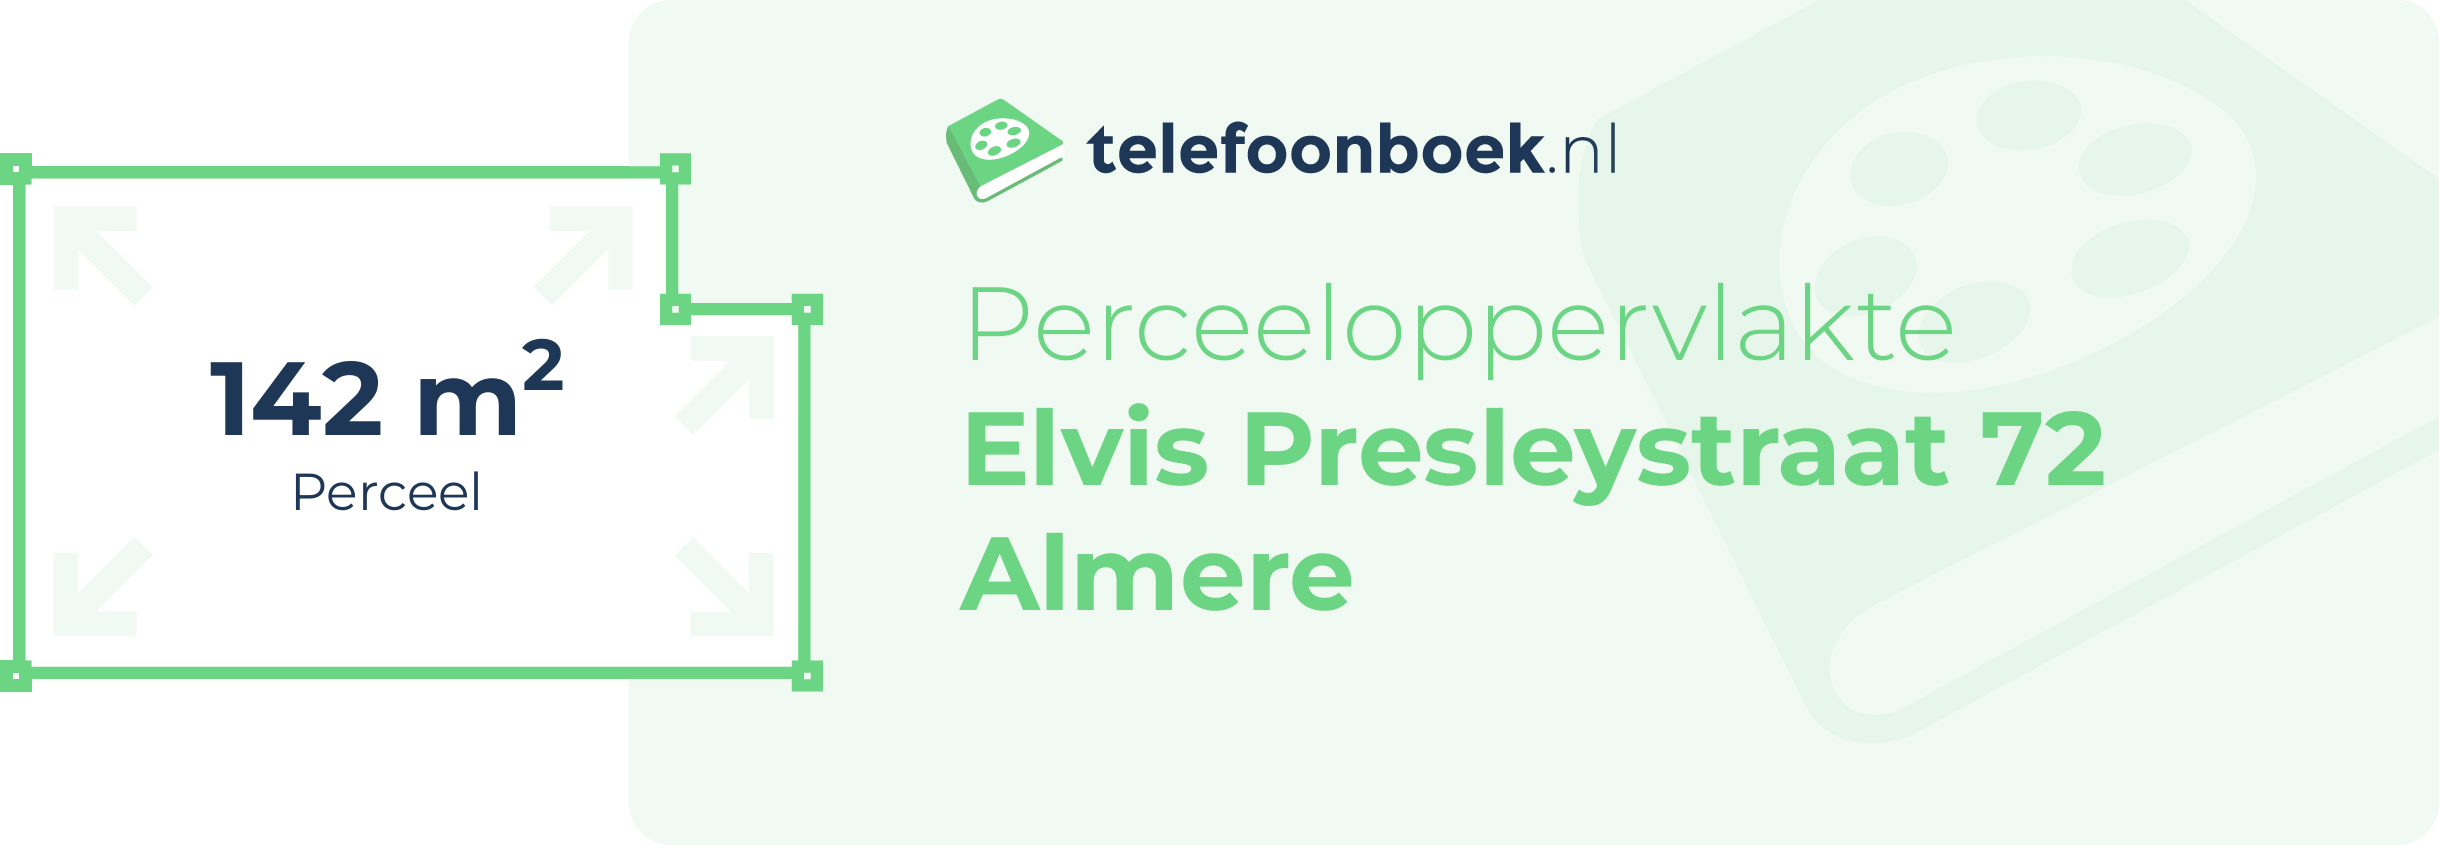 Perceeloppervlakte Elvis Presleystraat 72 Almere